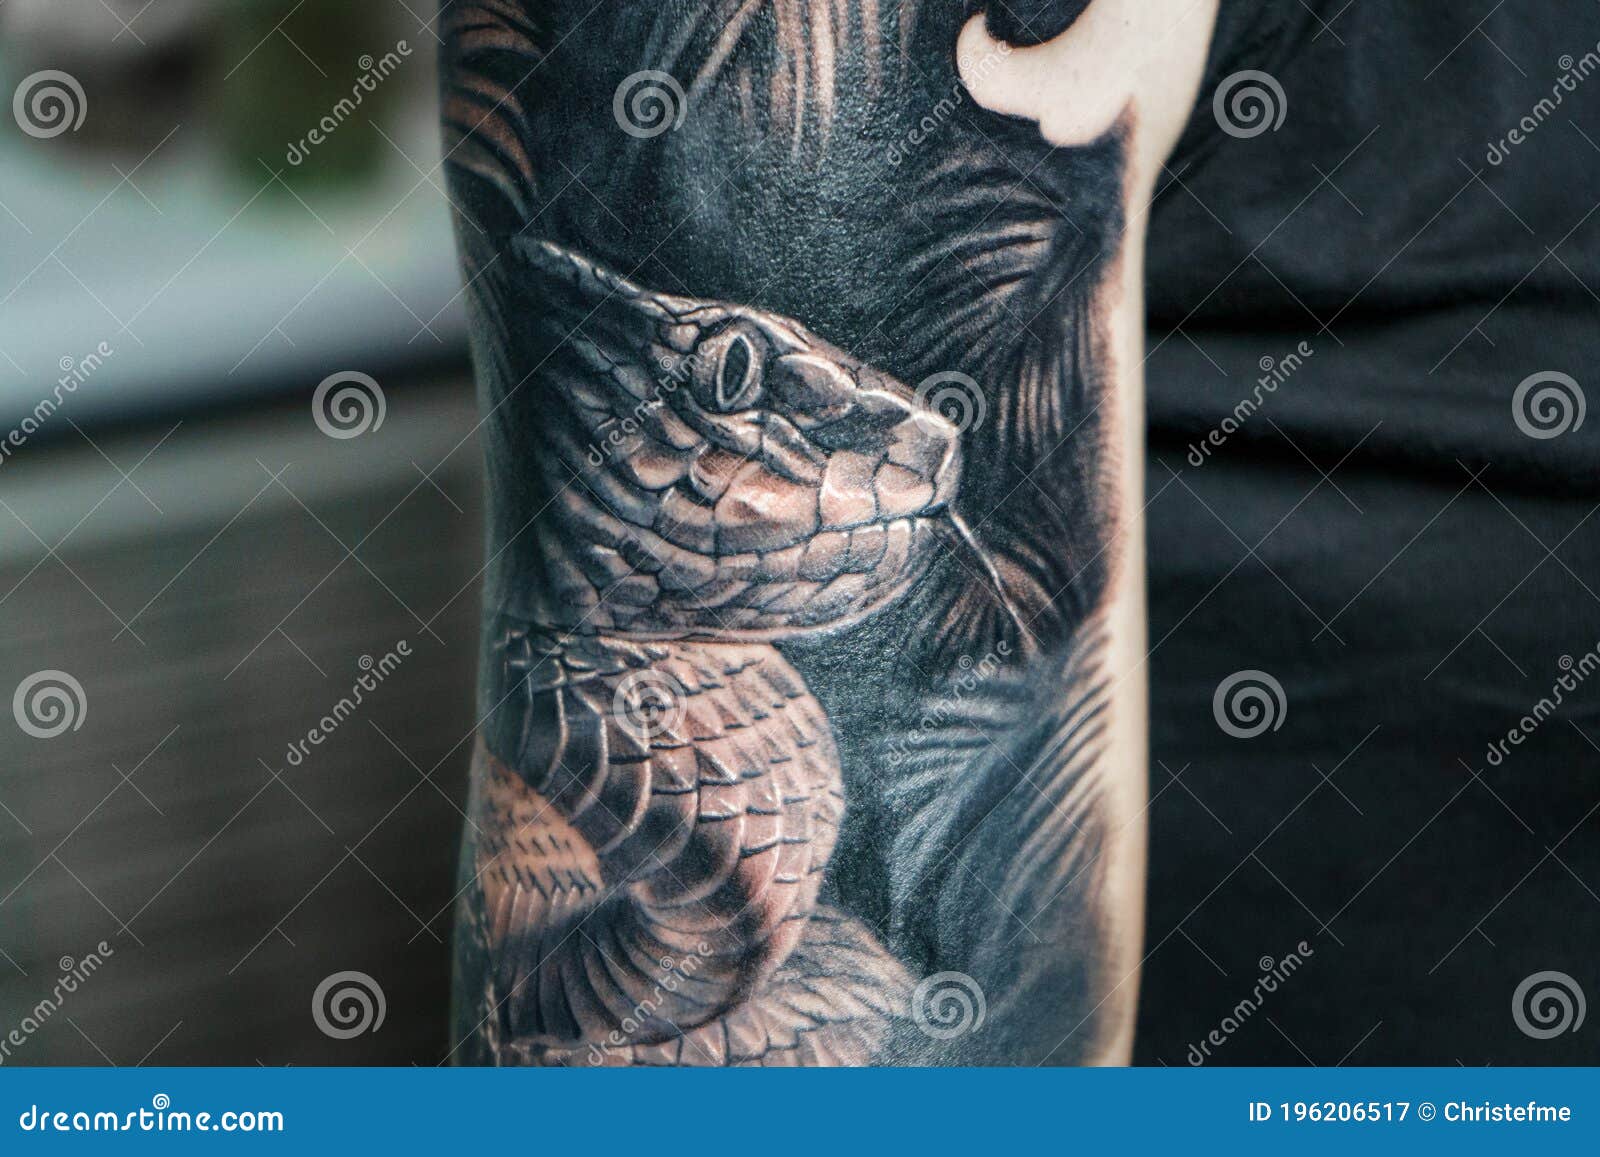 Snake on a forearm by tattooist Alejo GMZ  Tattoogridnet